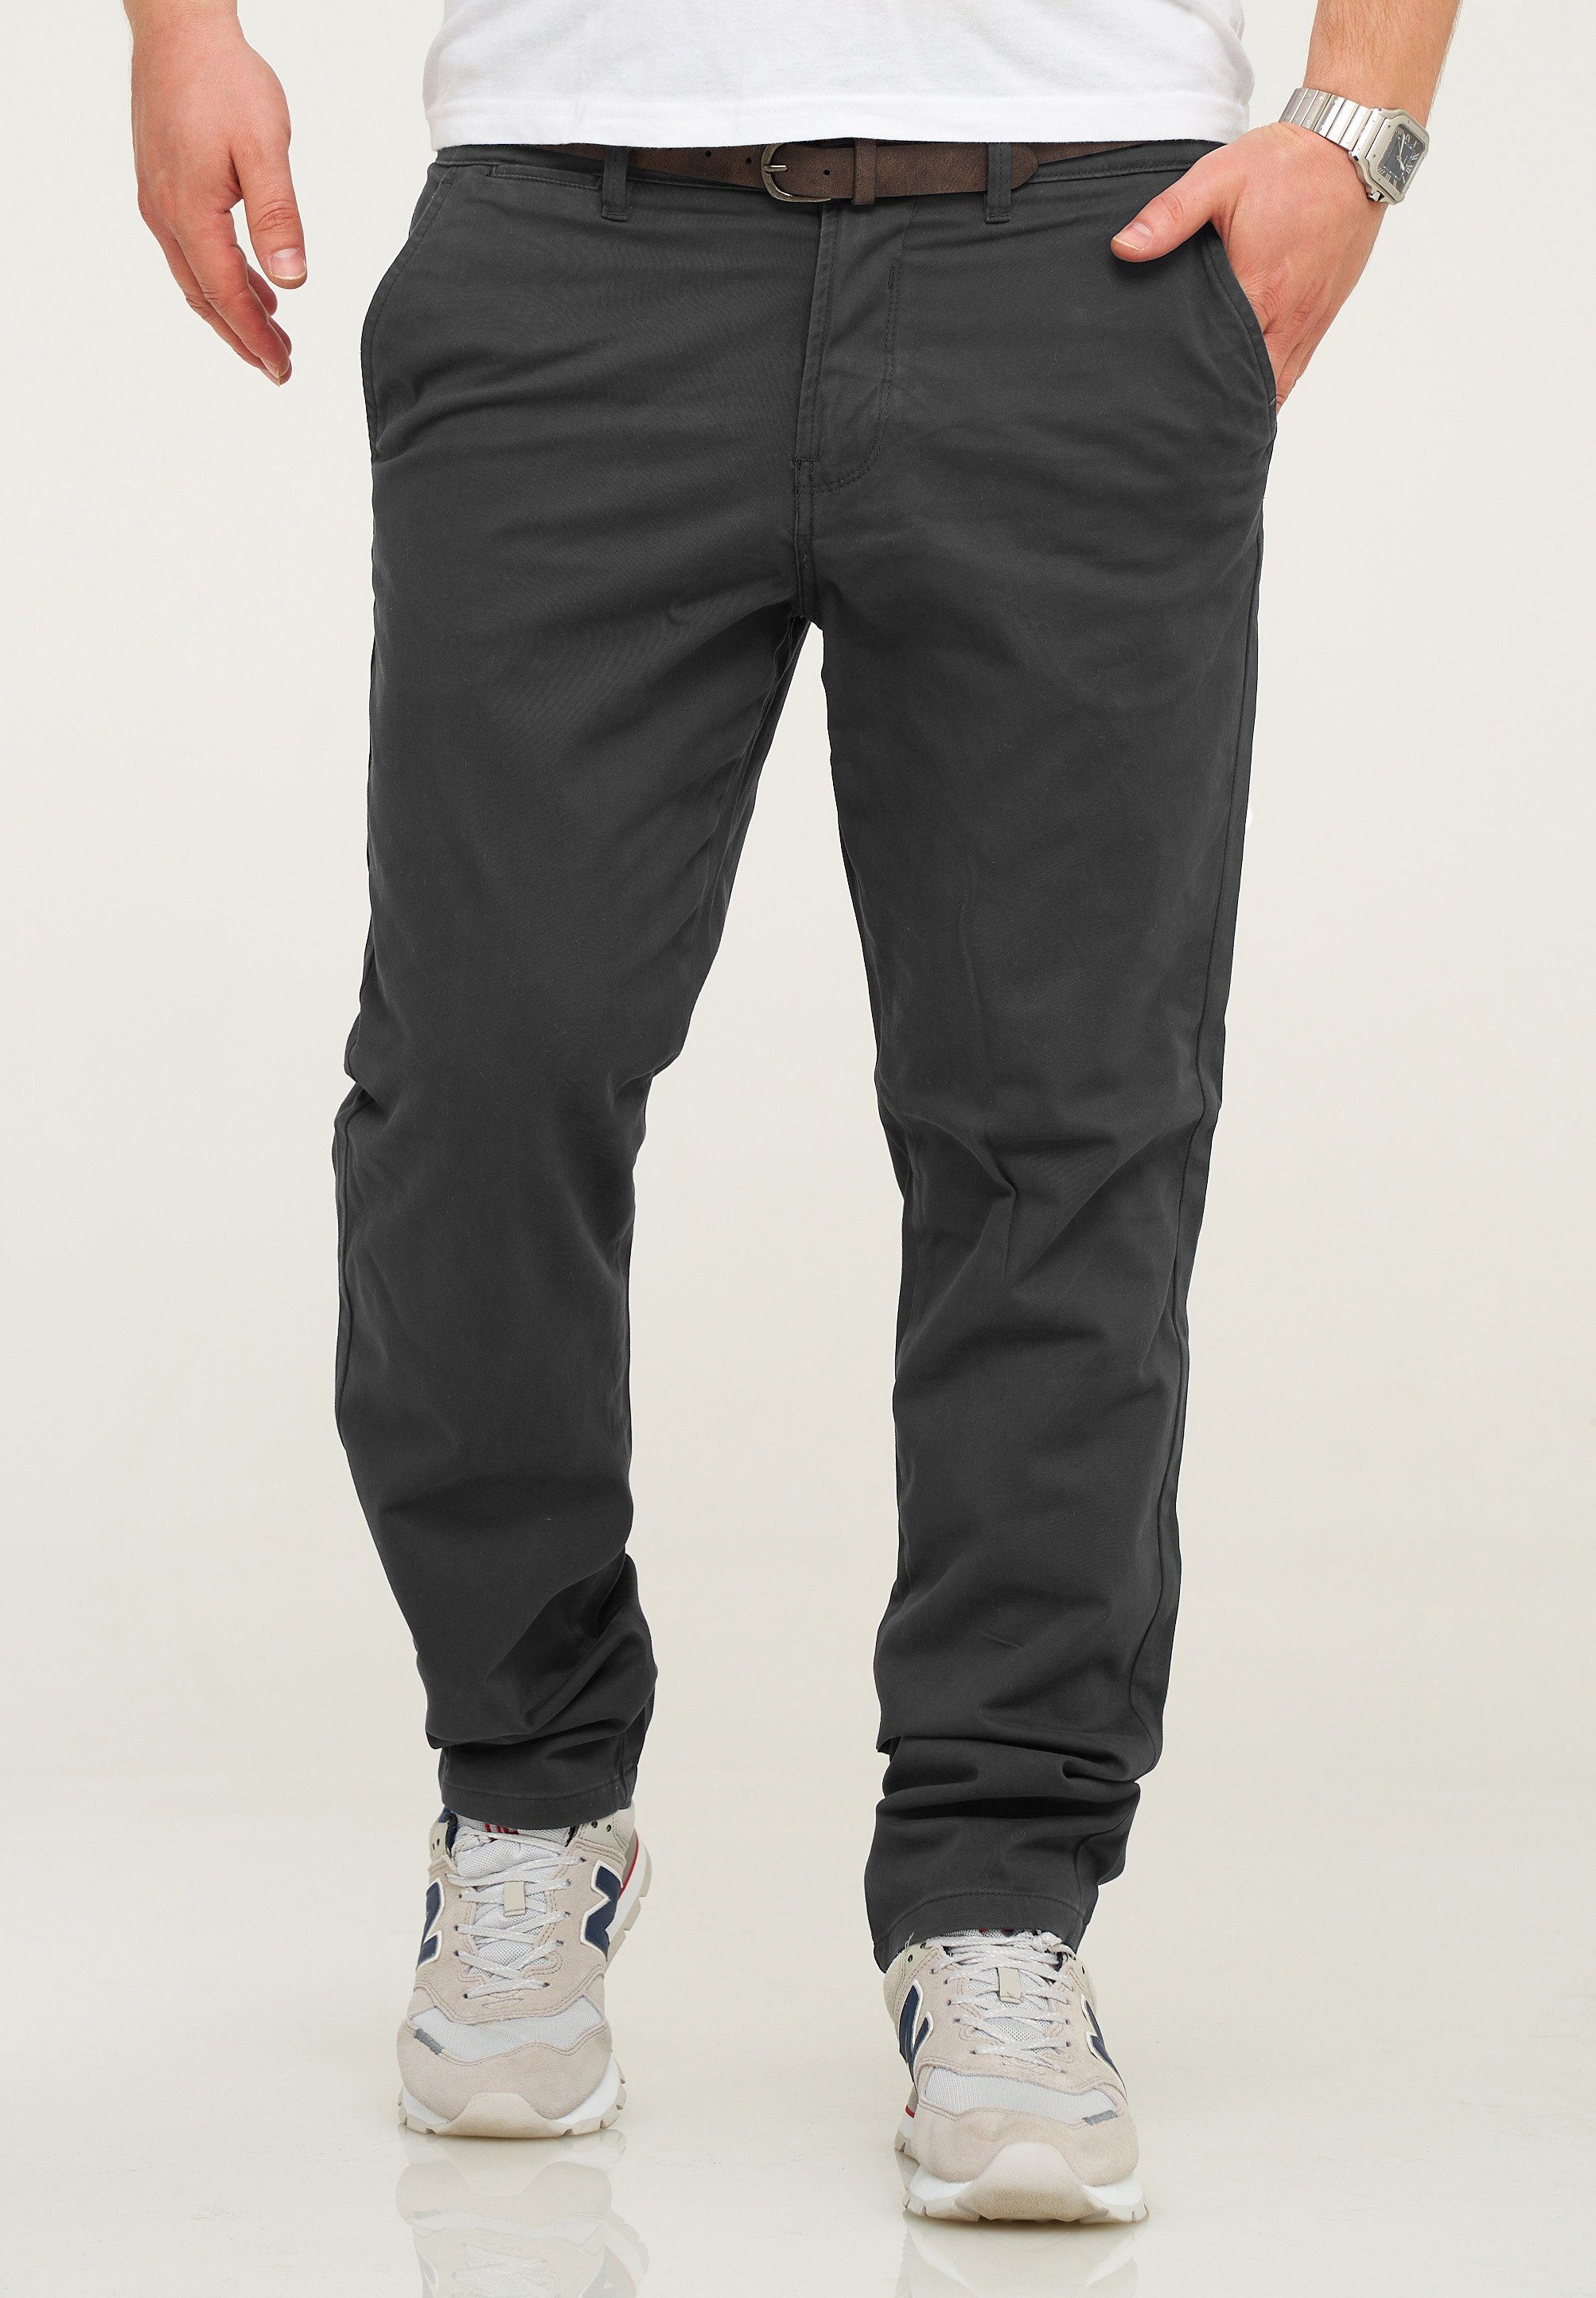 Jack & Jones Chinohose JJCS mit Gürtel Stretch Jeans-Hose Casual Freizeithose Dark Grey